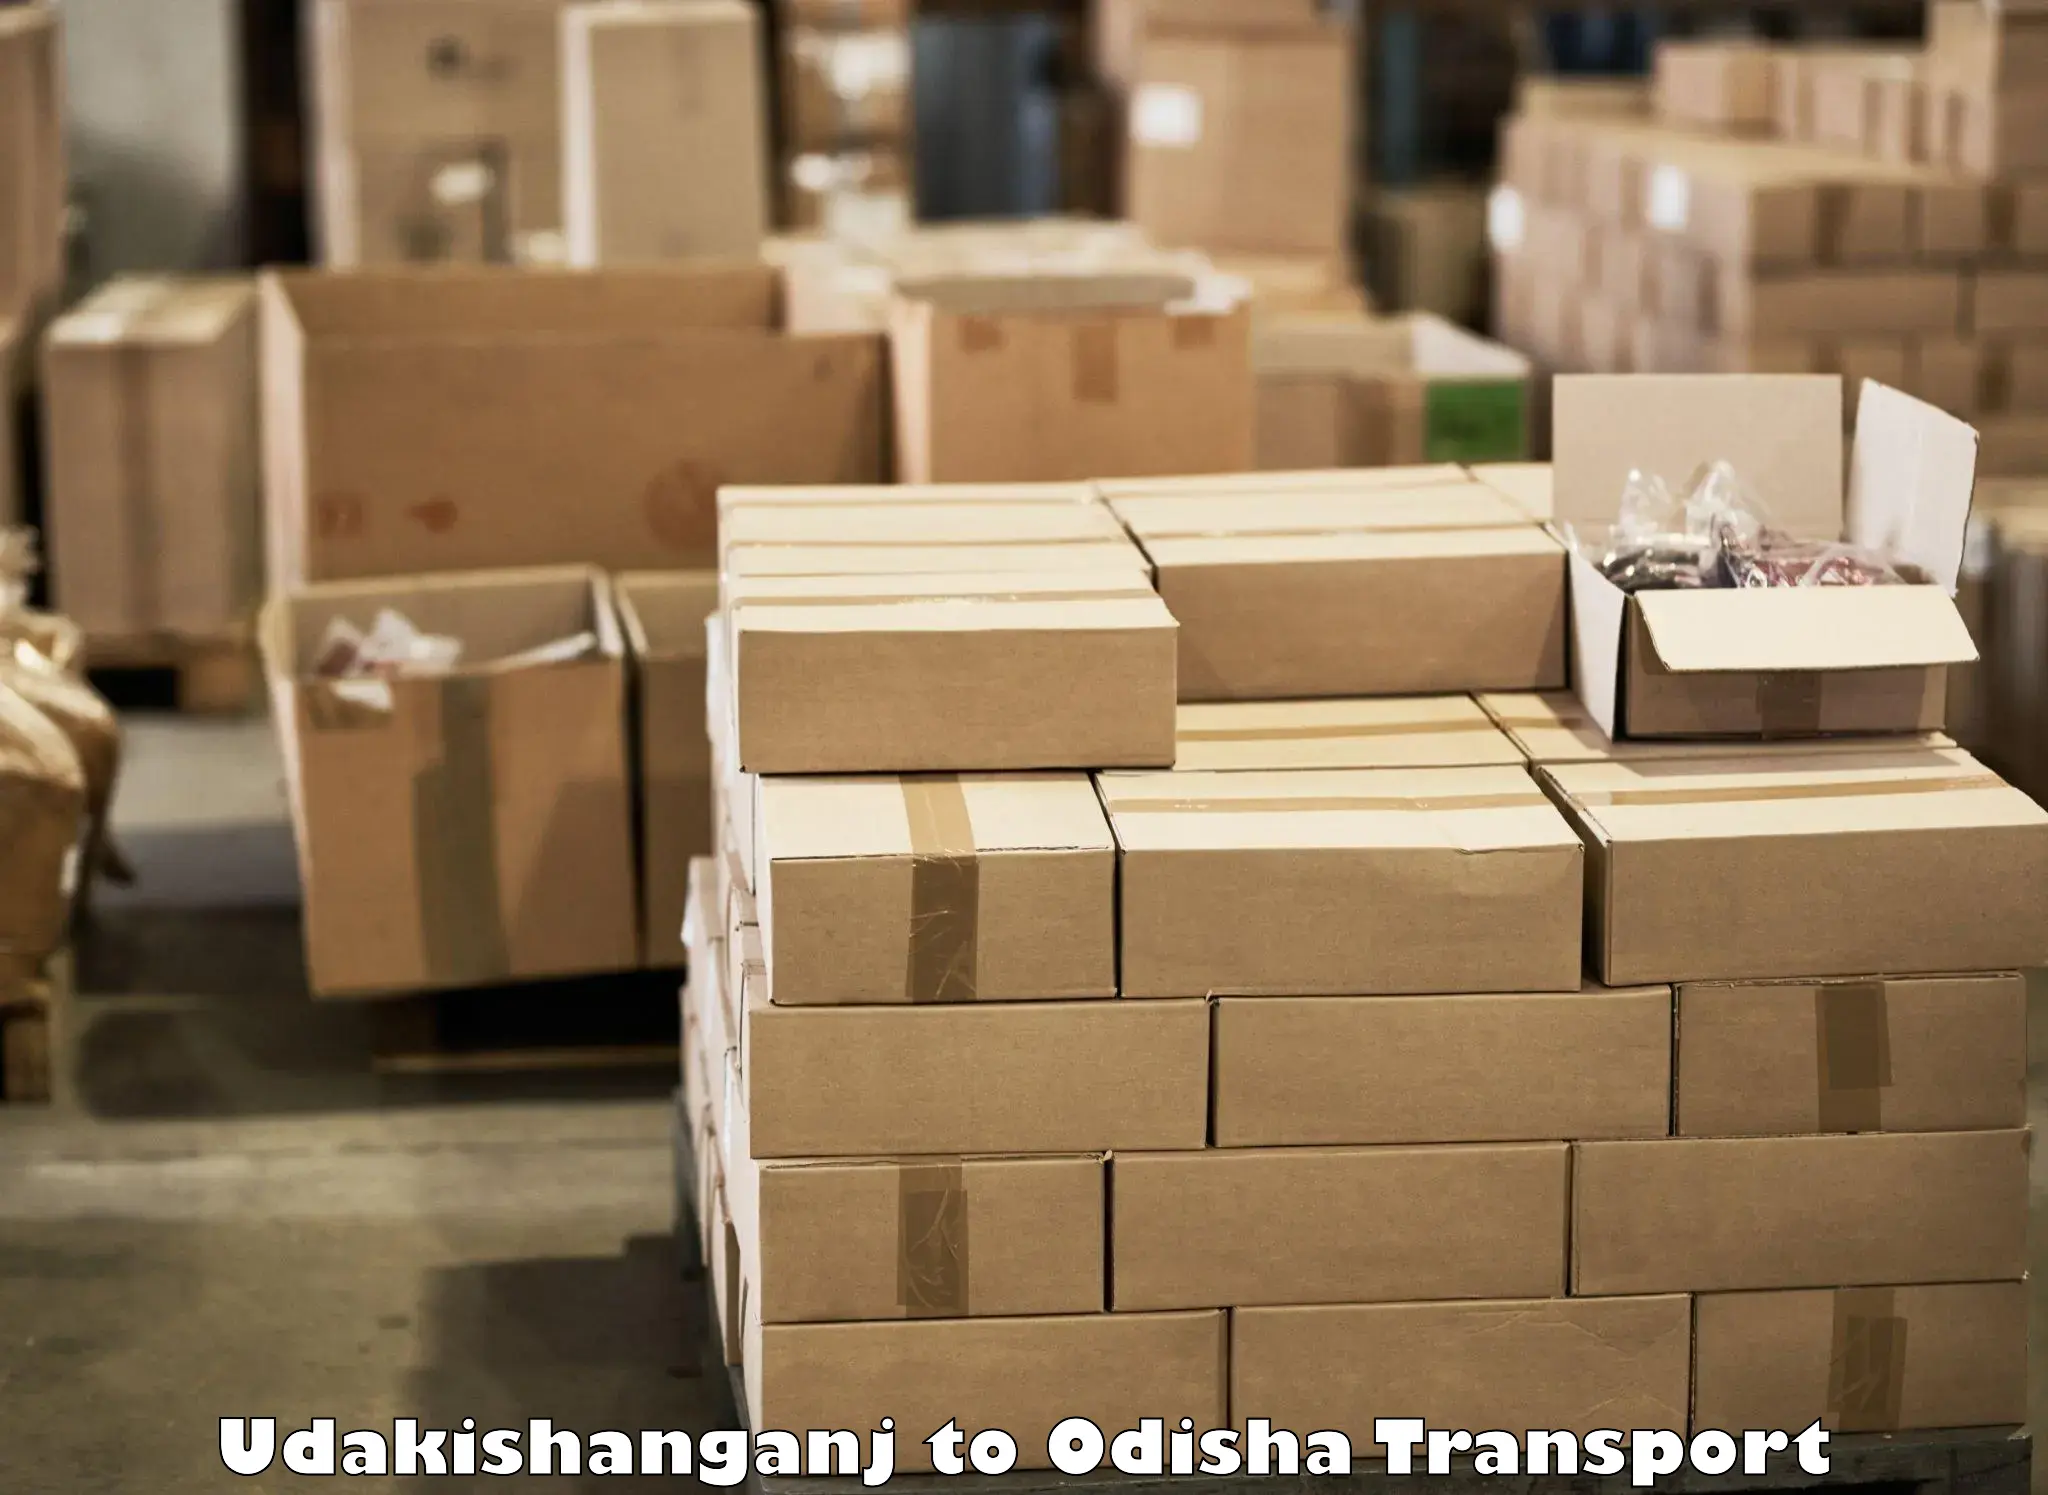 Container transportation services Udakishanganj to Balasore